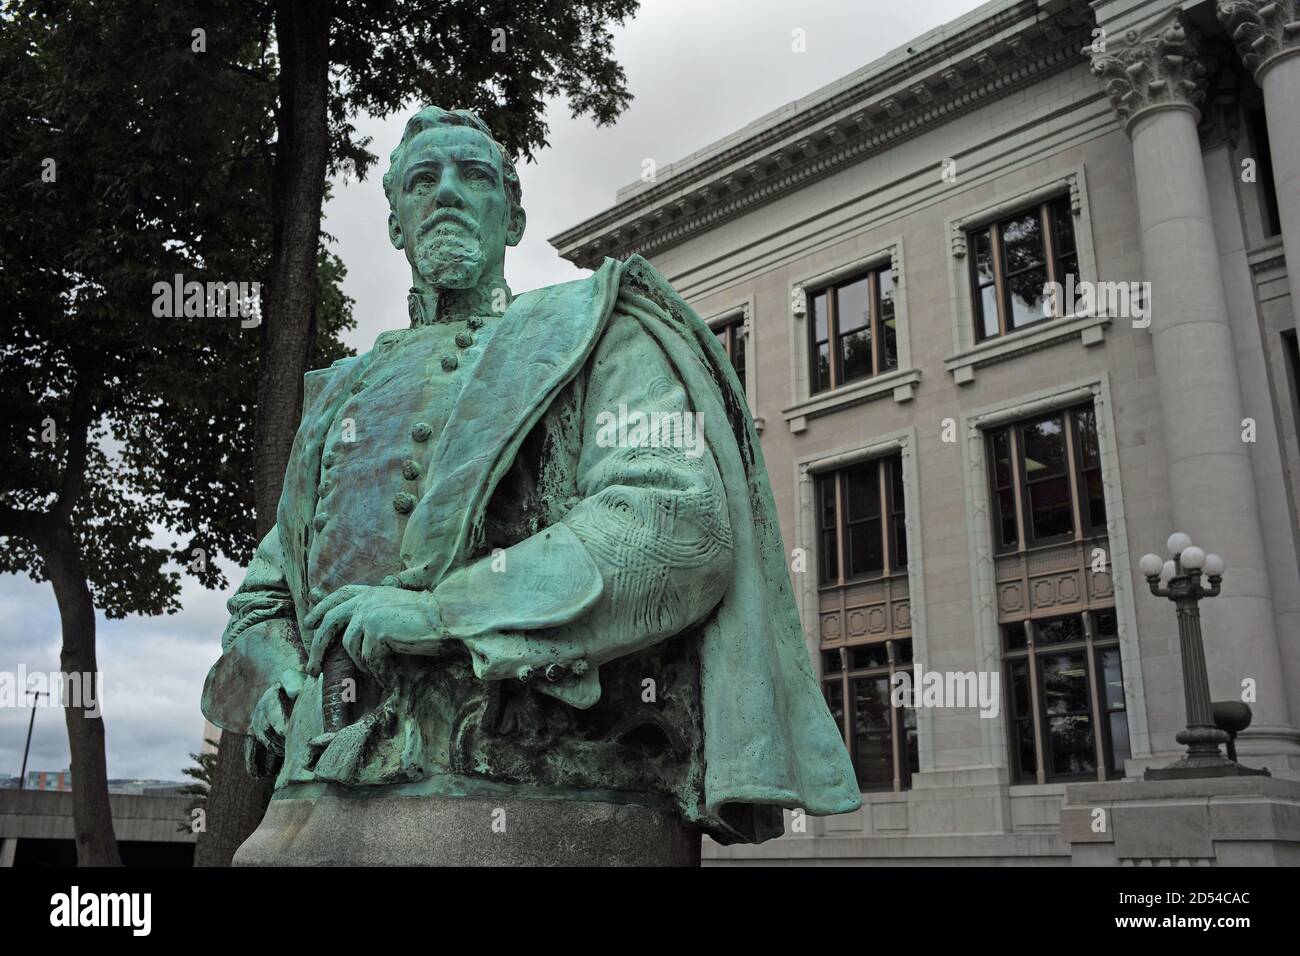 Estatua de bronce del general confederado A.P. Stewart colocó frente al juzgado del condado de Hamilton por las Hijas Unidas de la Confederación en 1919 Foto de stock